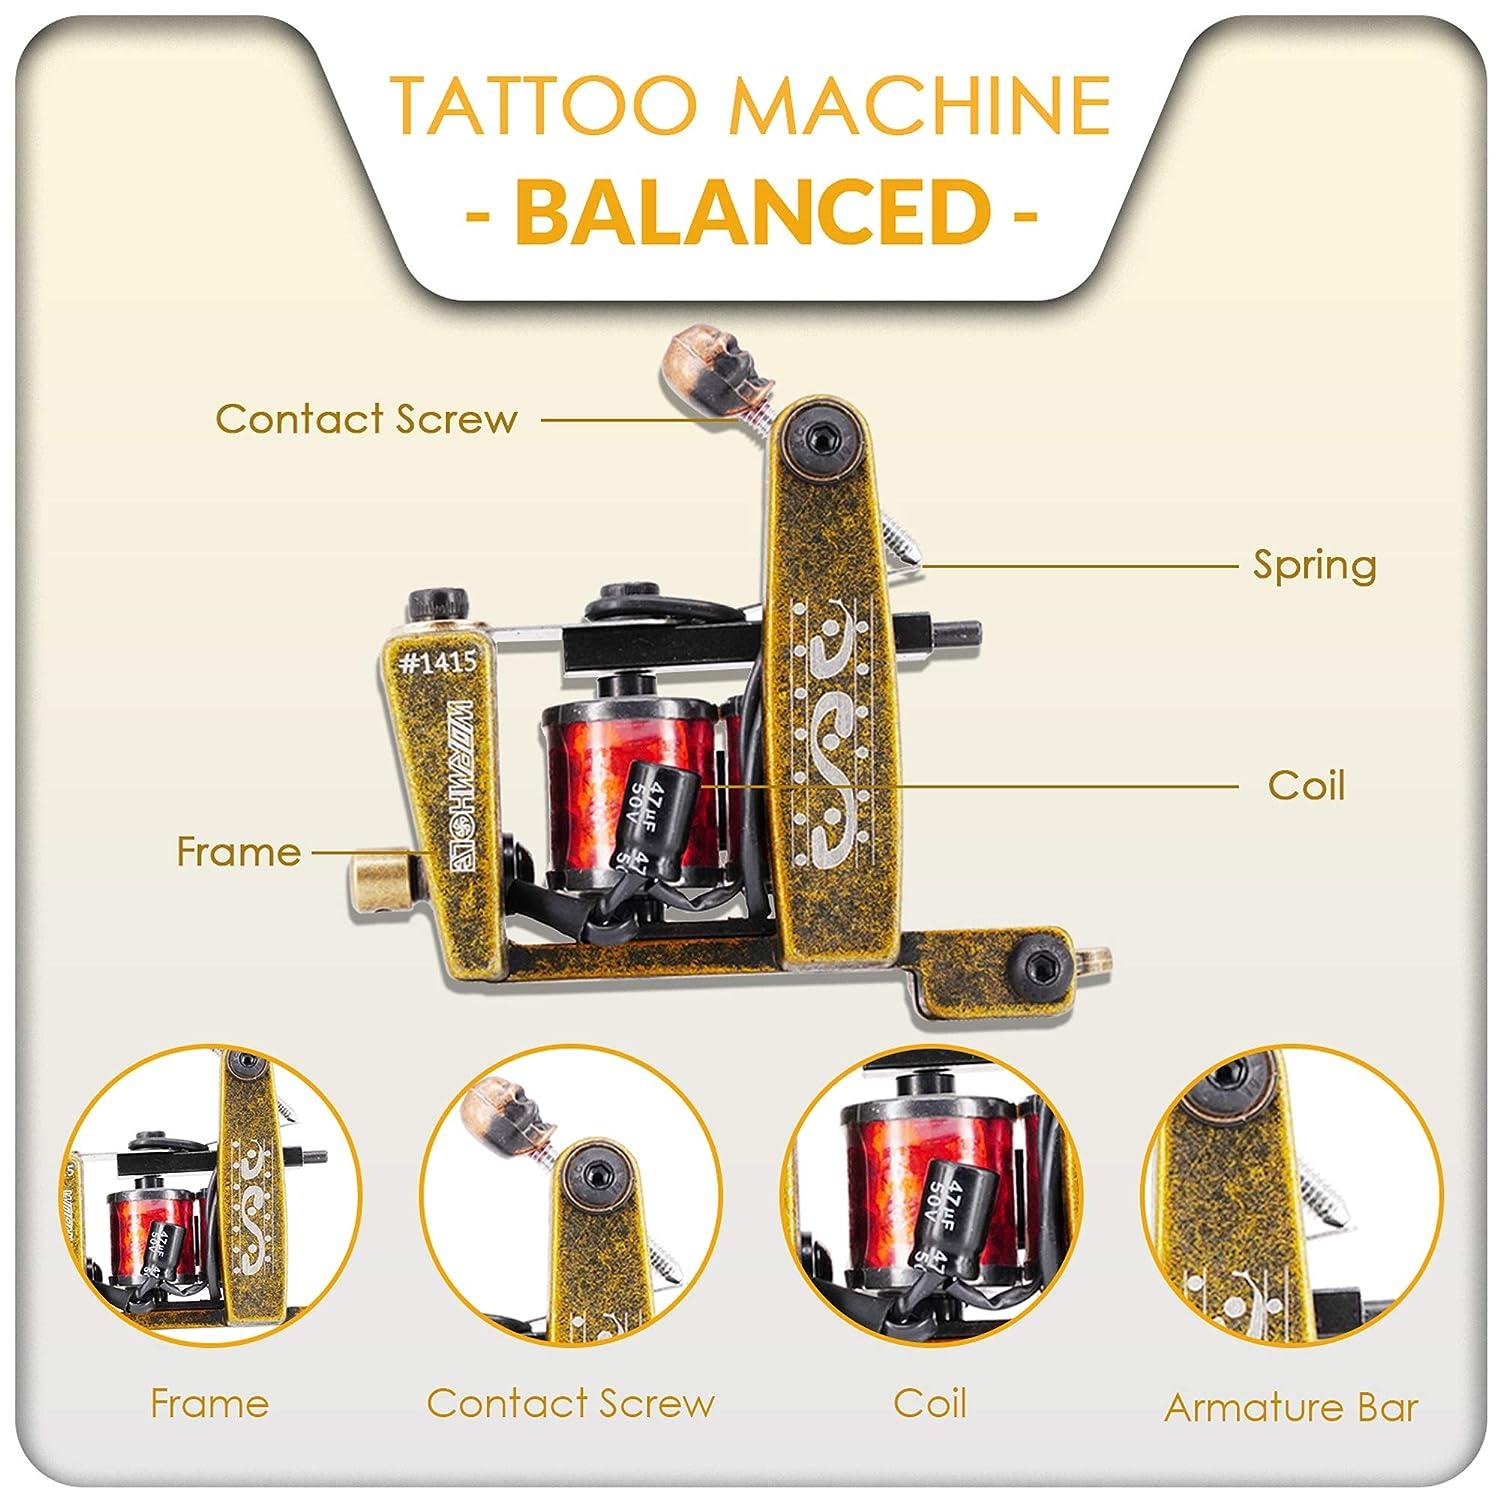 Sunskin tattoo machines